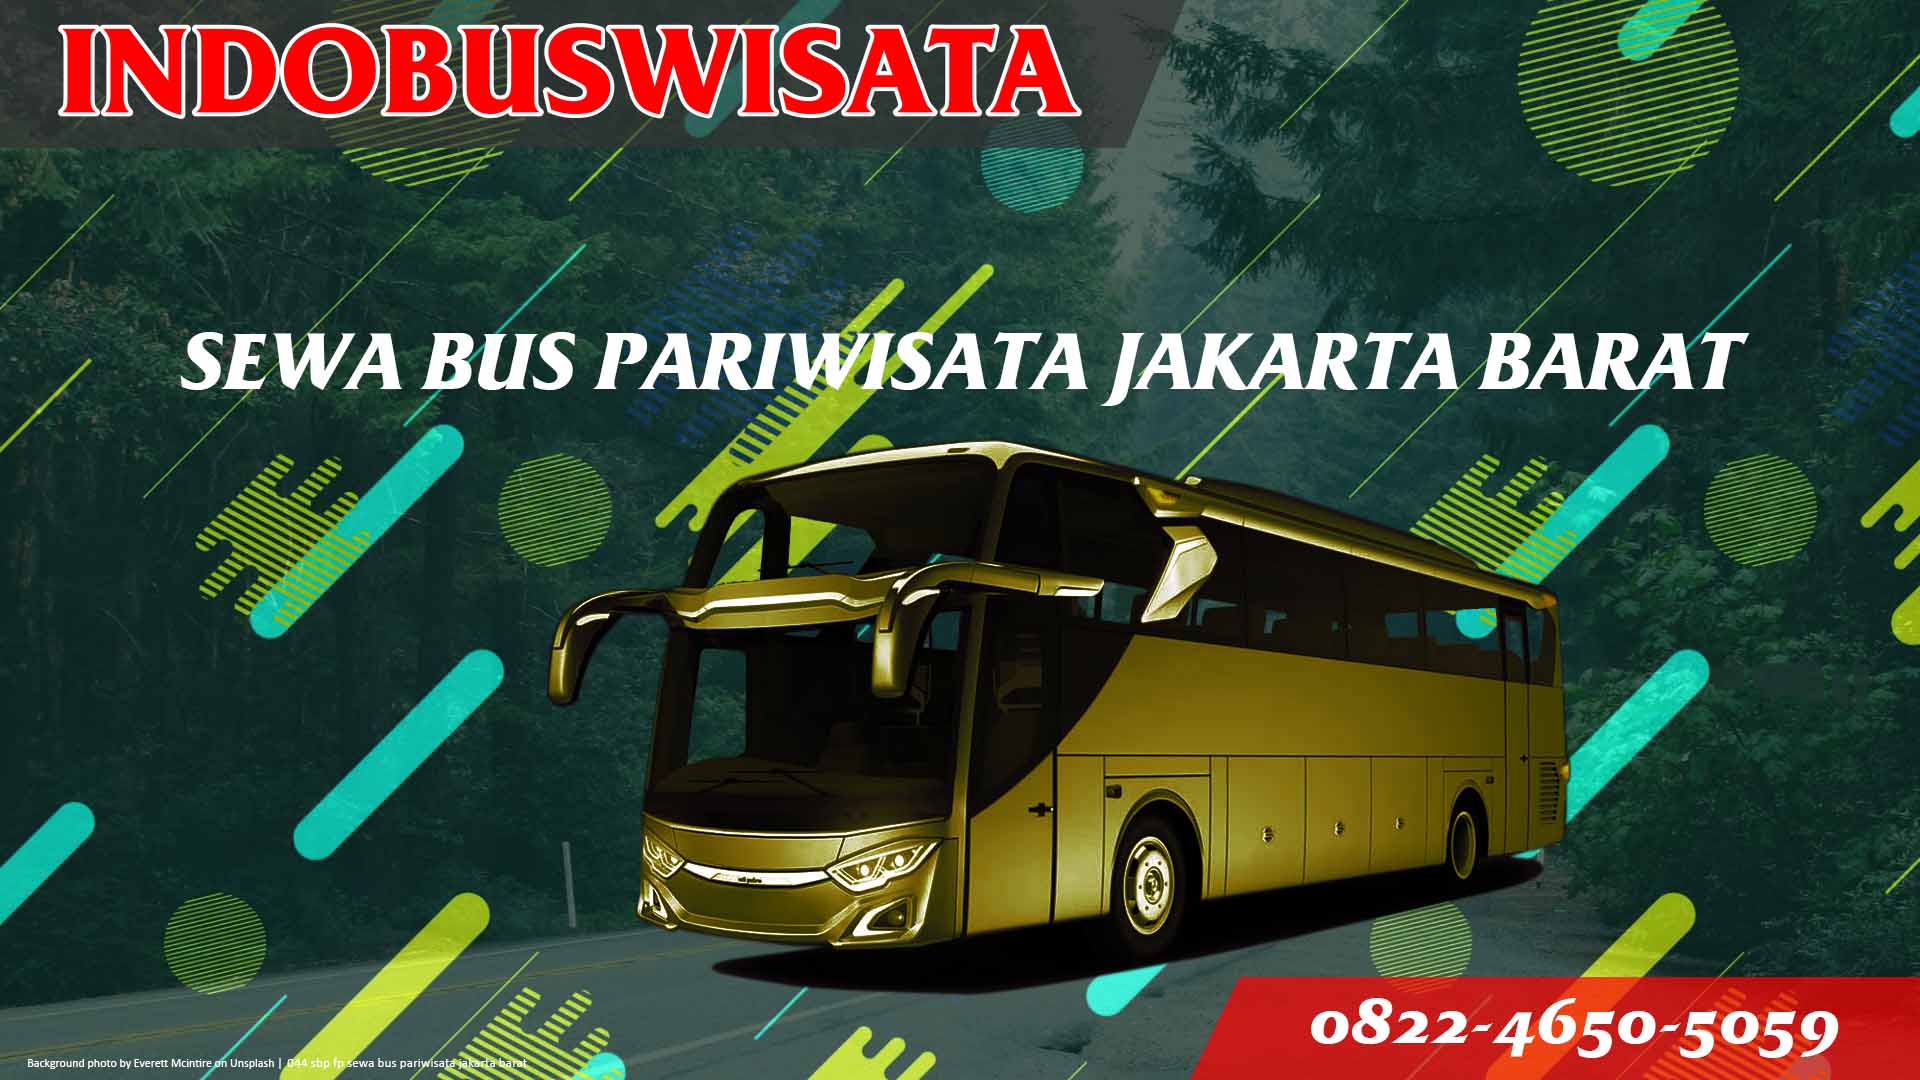 044 Sbp Fp Sewa Bus Pariwisata Jakarta Barat Indobuswisata